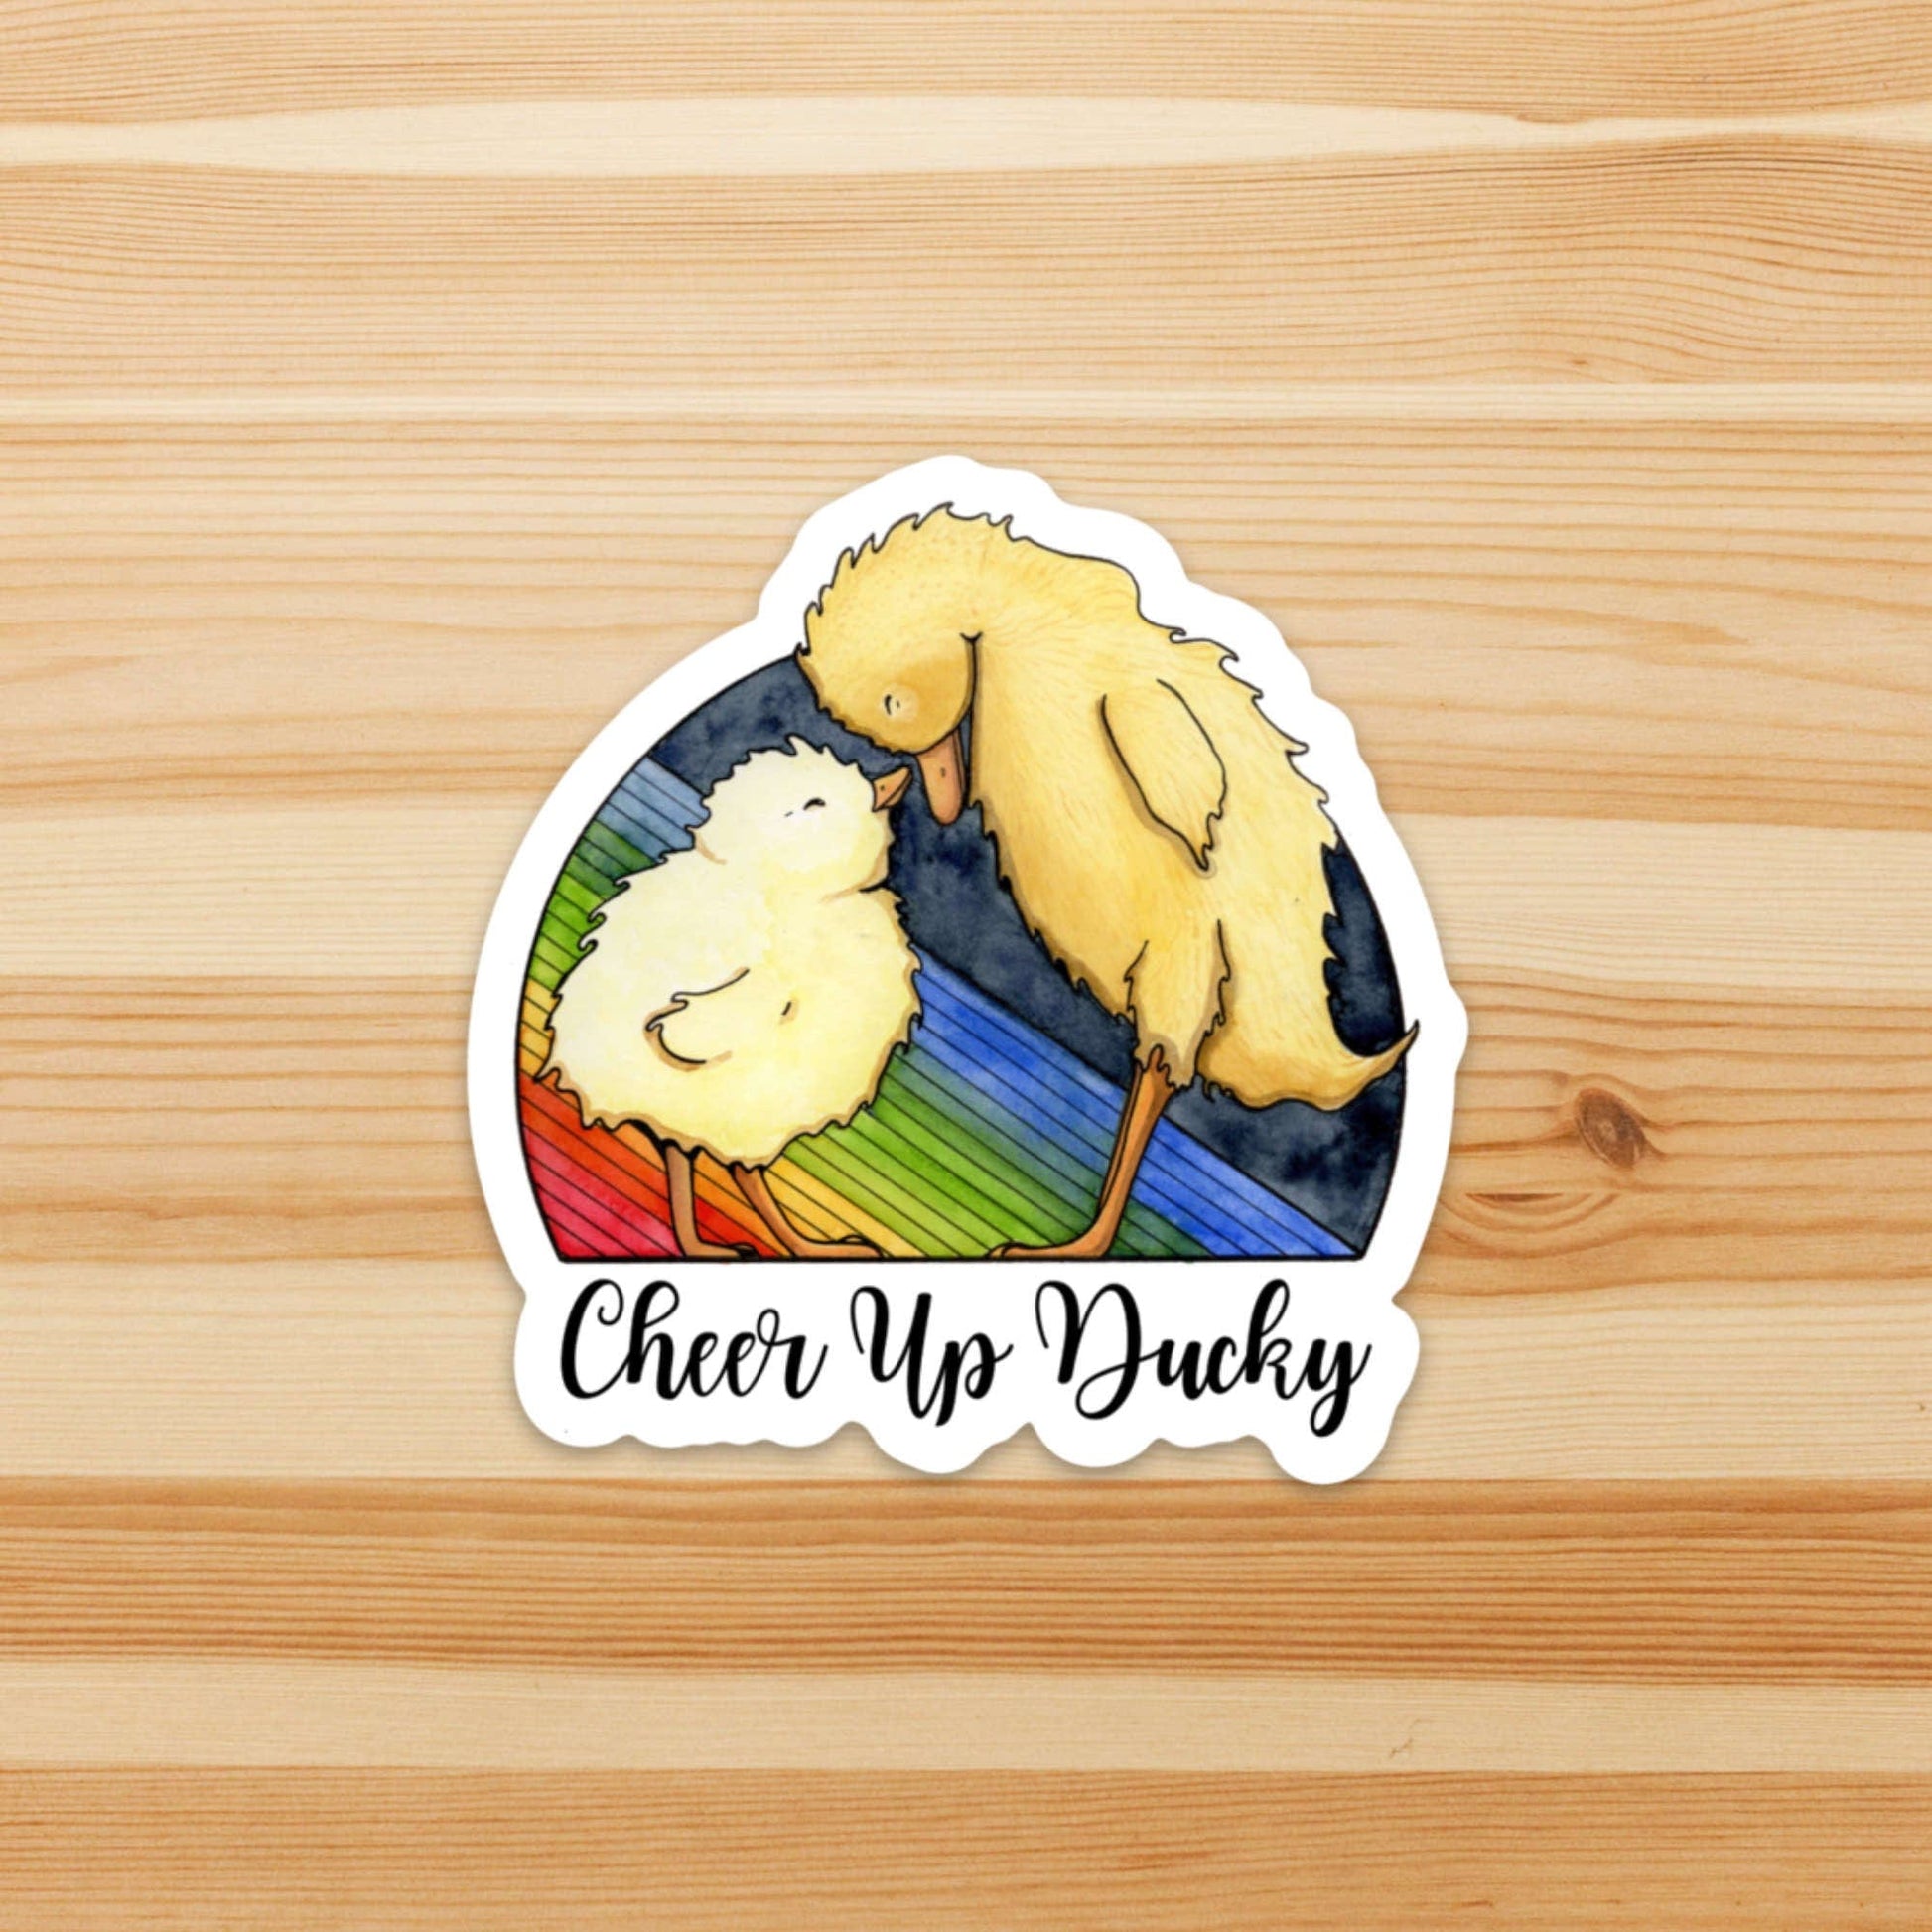 PinkPolish Design Stickers "Cheer Up Ducky" Vinyl Die Cut Sticker